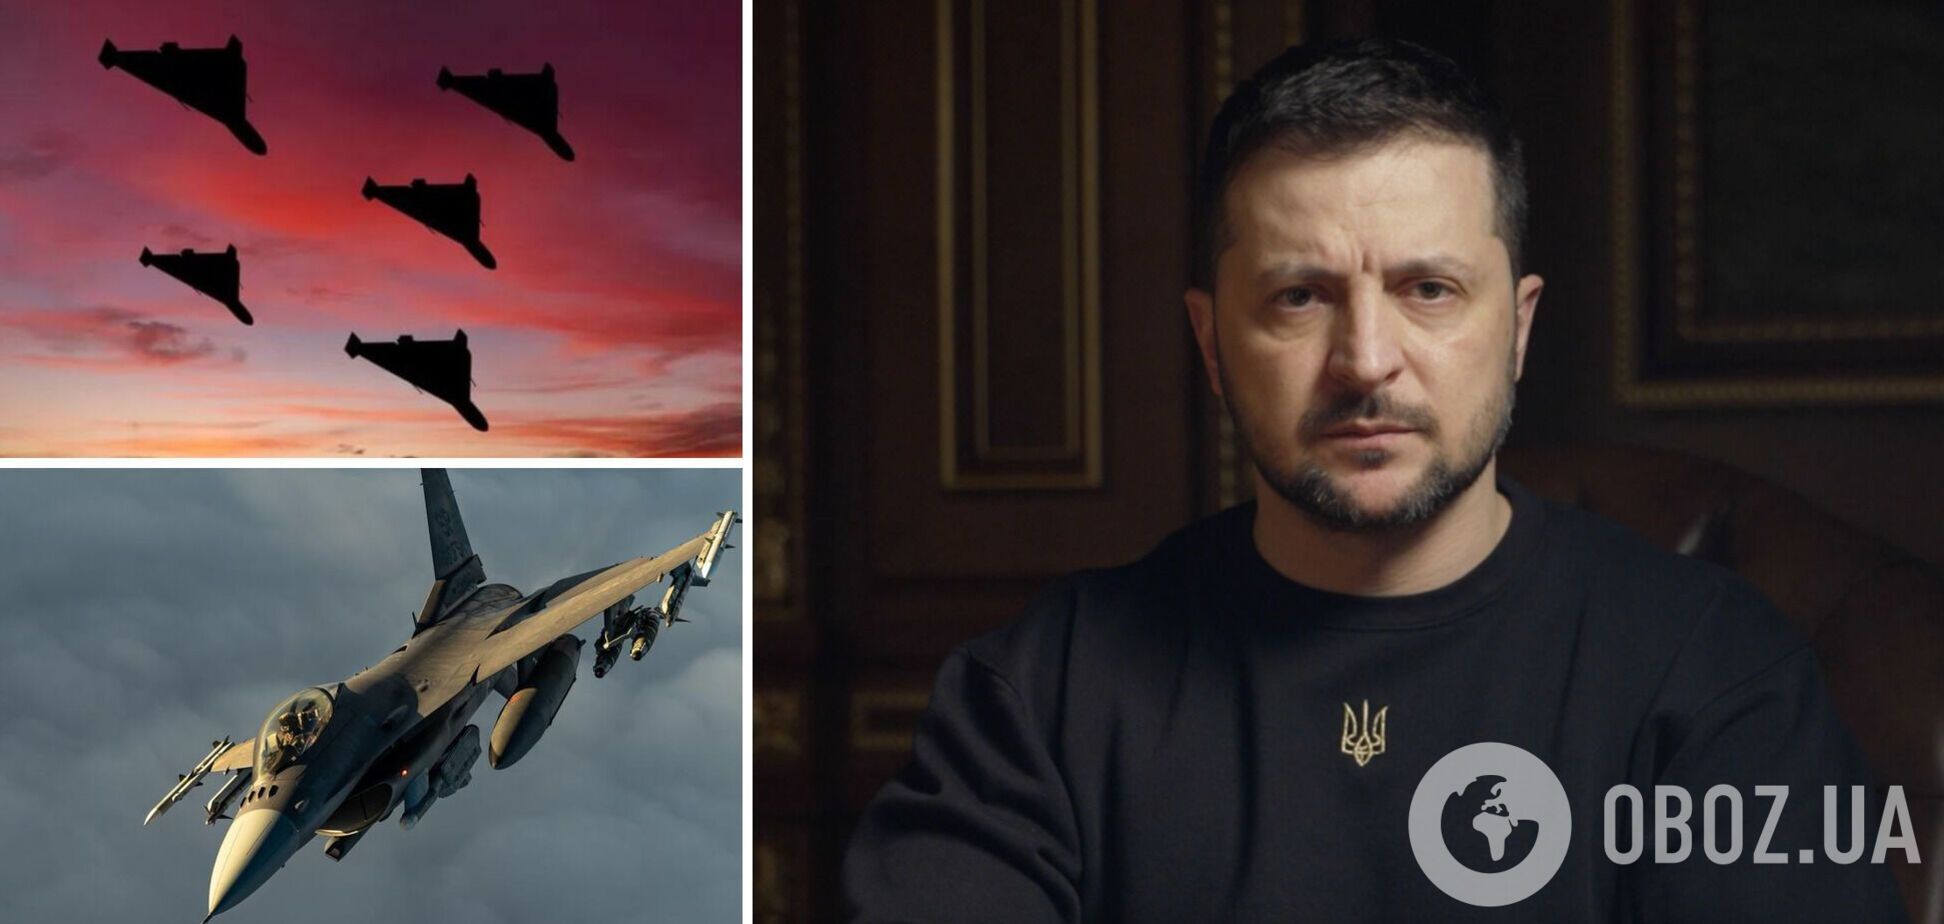 Сучасна ППО повноцінна, коли посилена літаками: Зеленський про атаки дронами і потребу України в авіації 